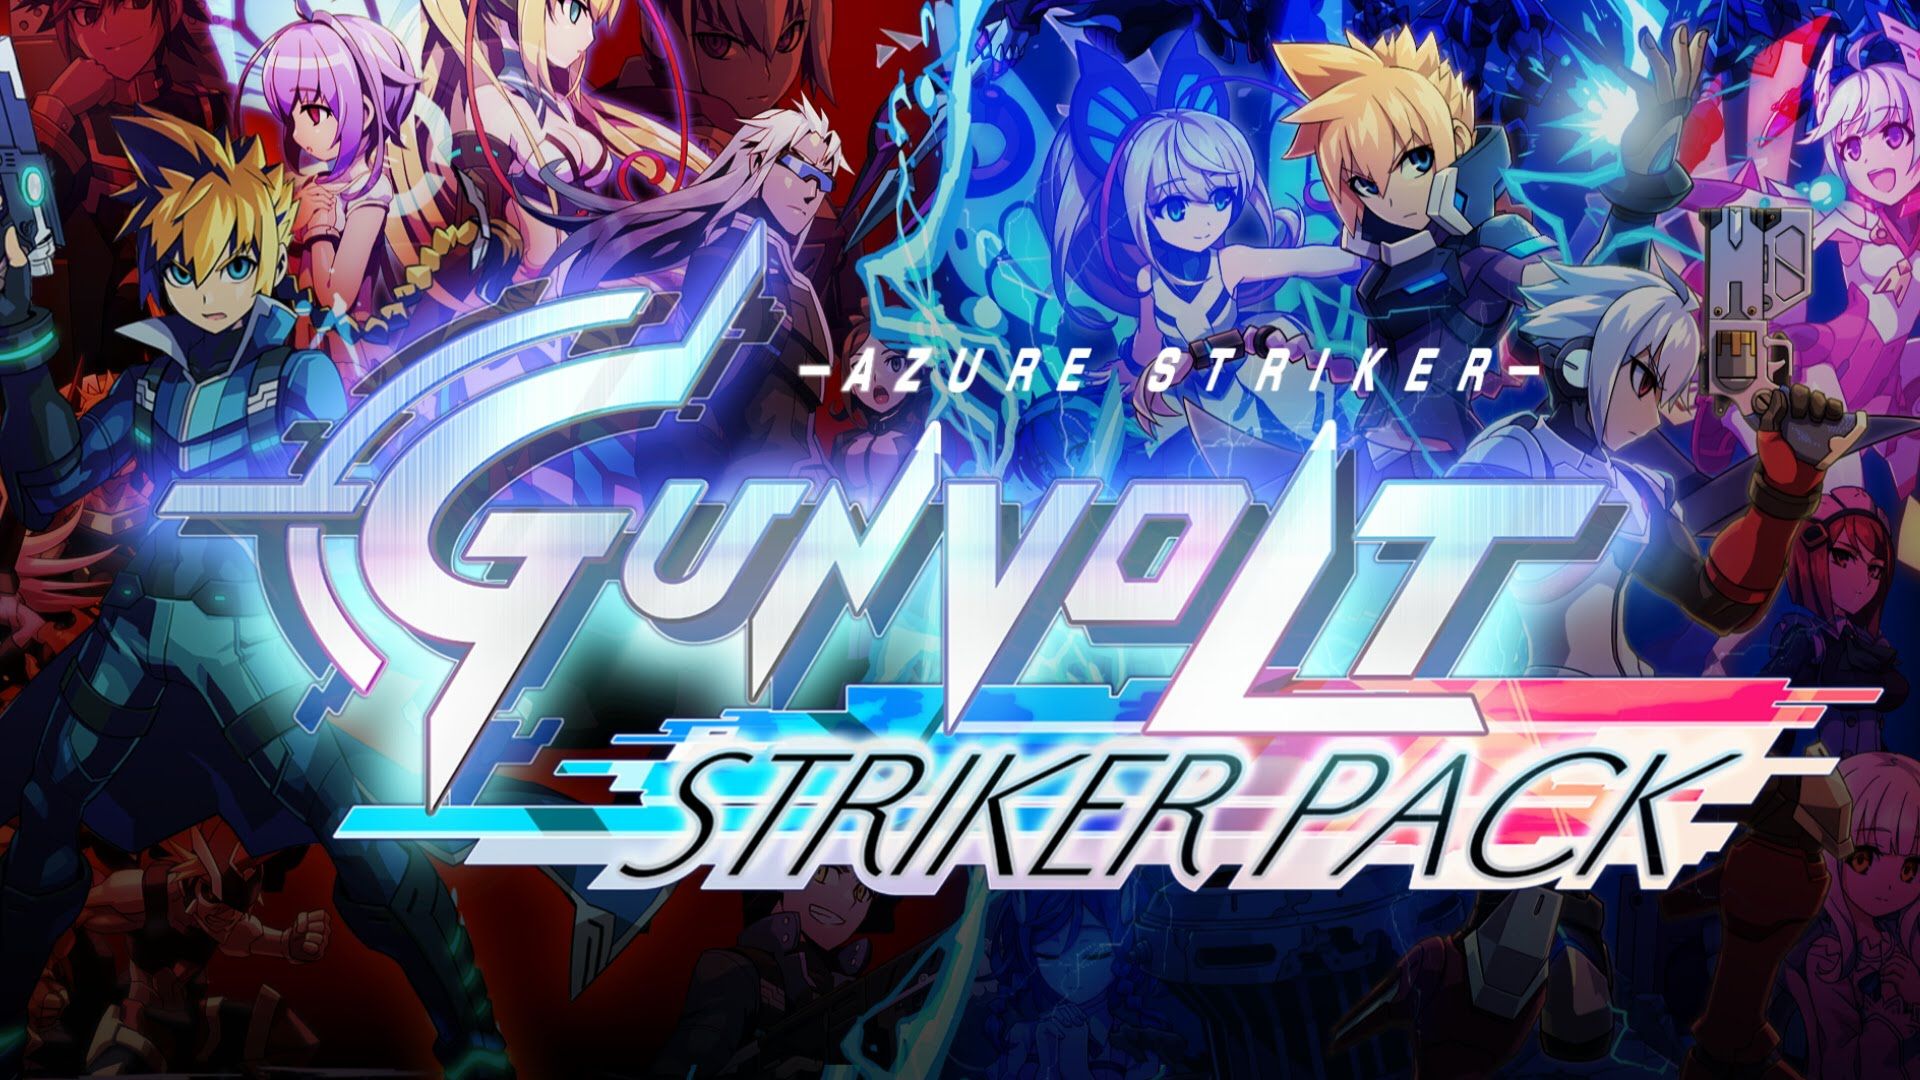 Azure Striker Gunvolt: Striker Pack Physical Edition Coming